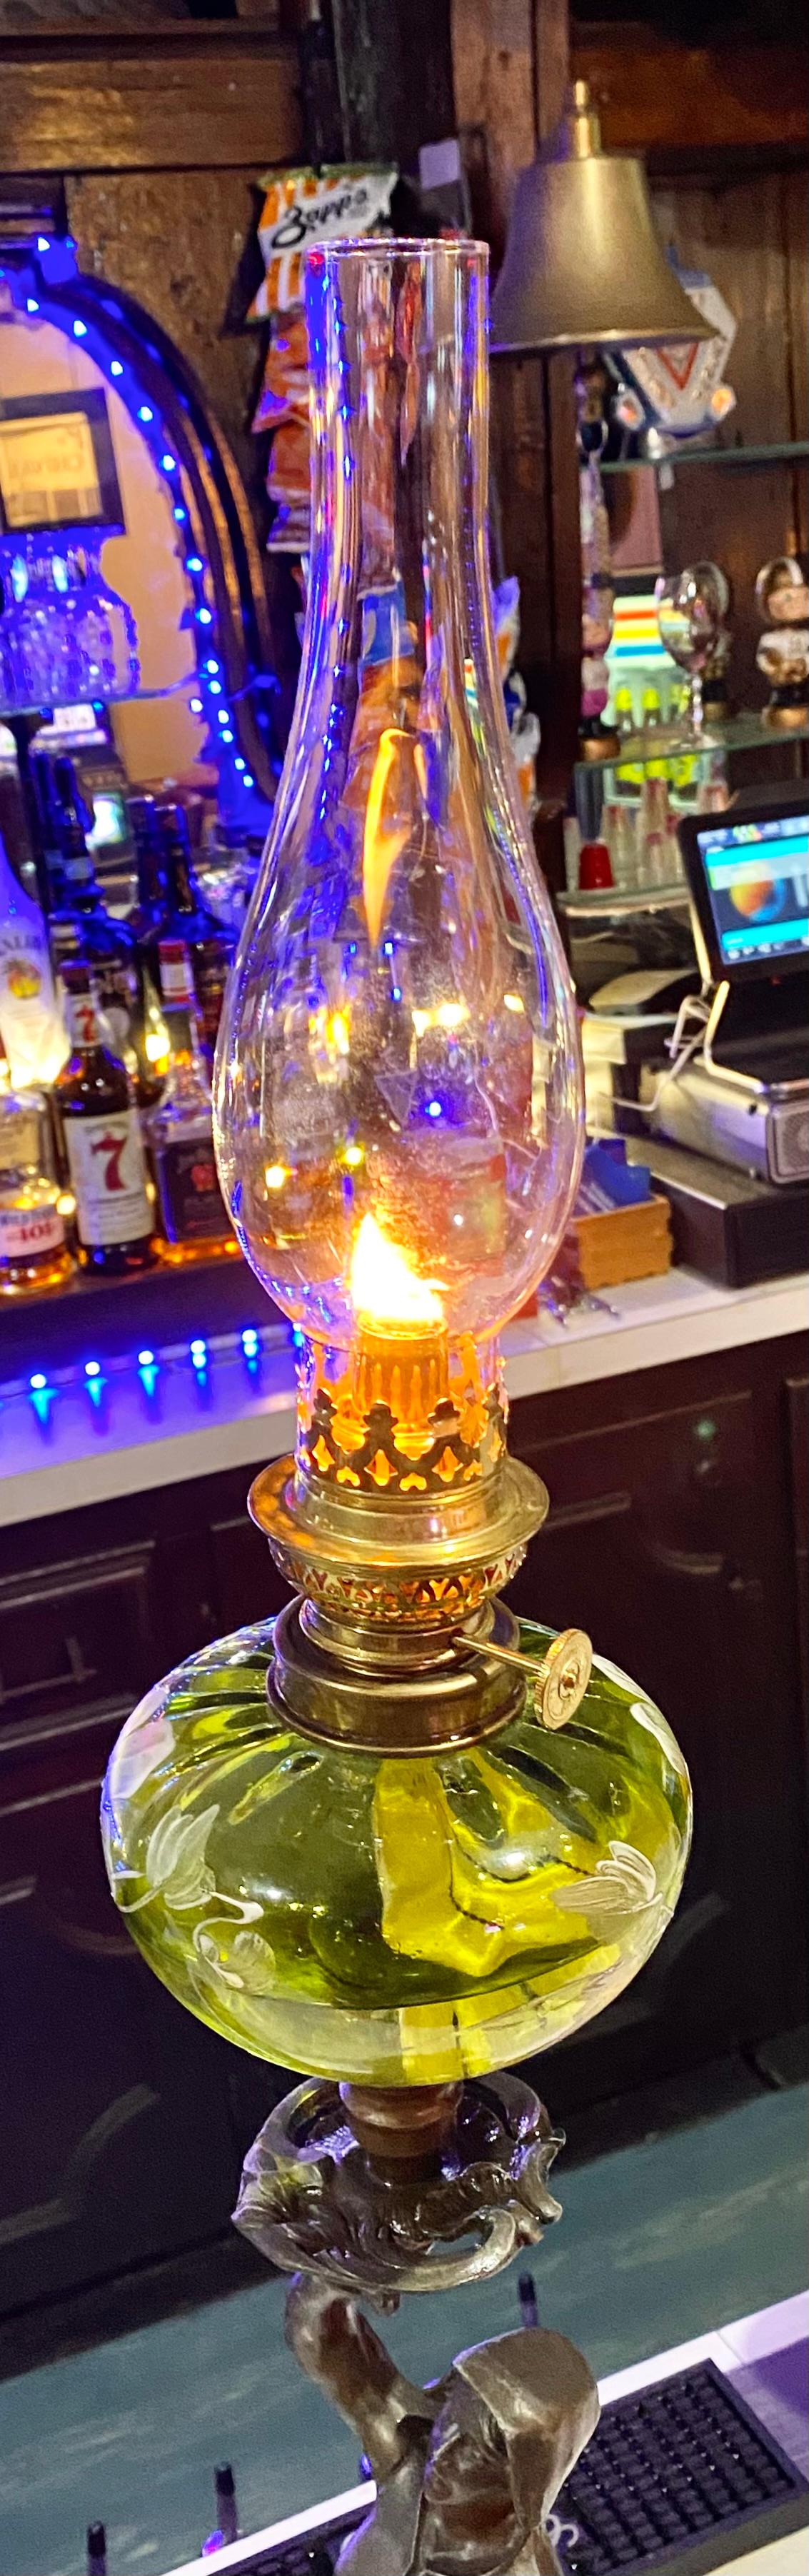 Antique French Art Nouveau Figural Oip Lamp For Sale 4